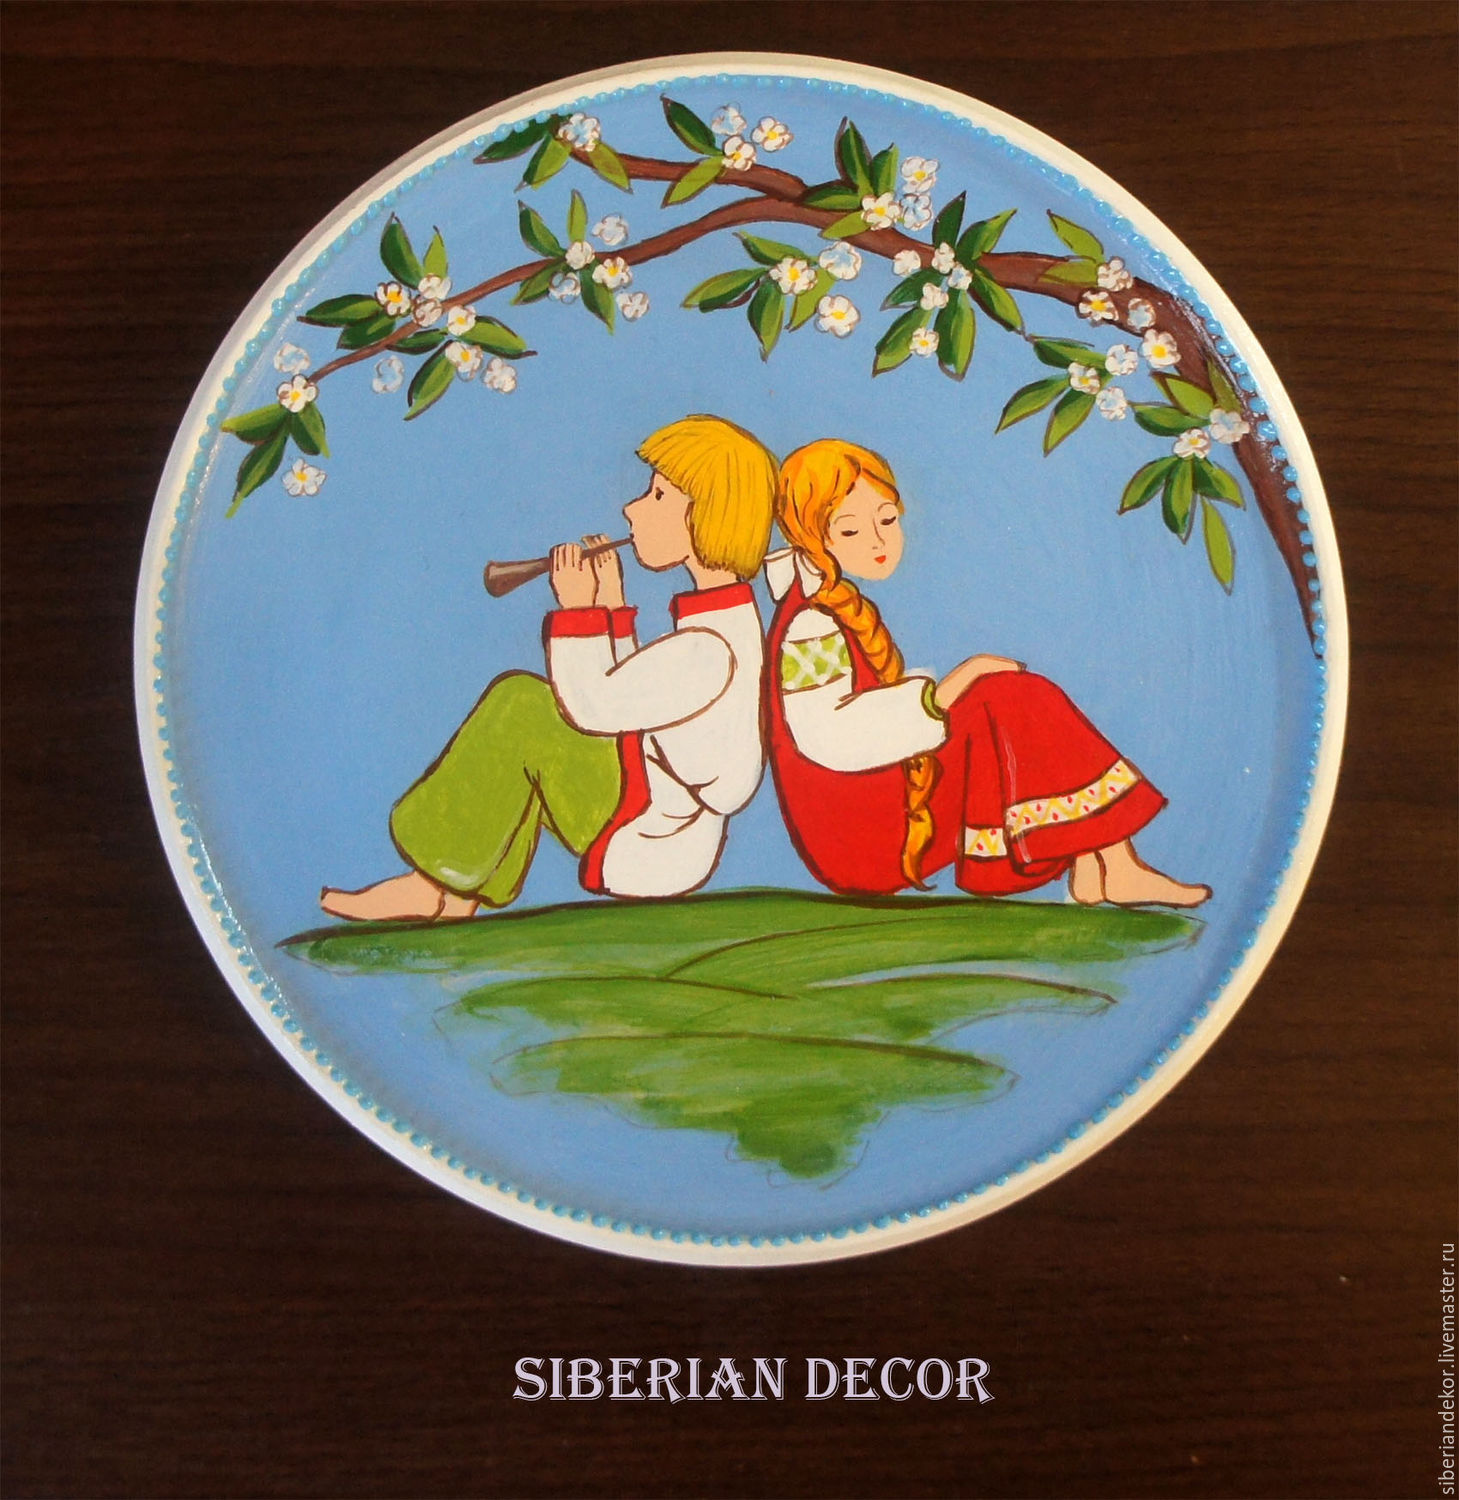 Влюбленные. декоративная деревянная тарелка